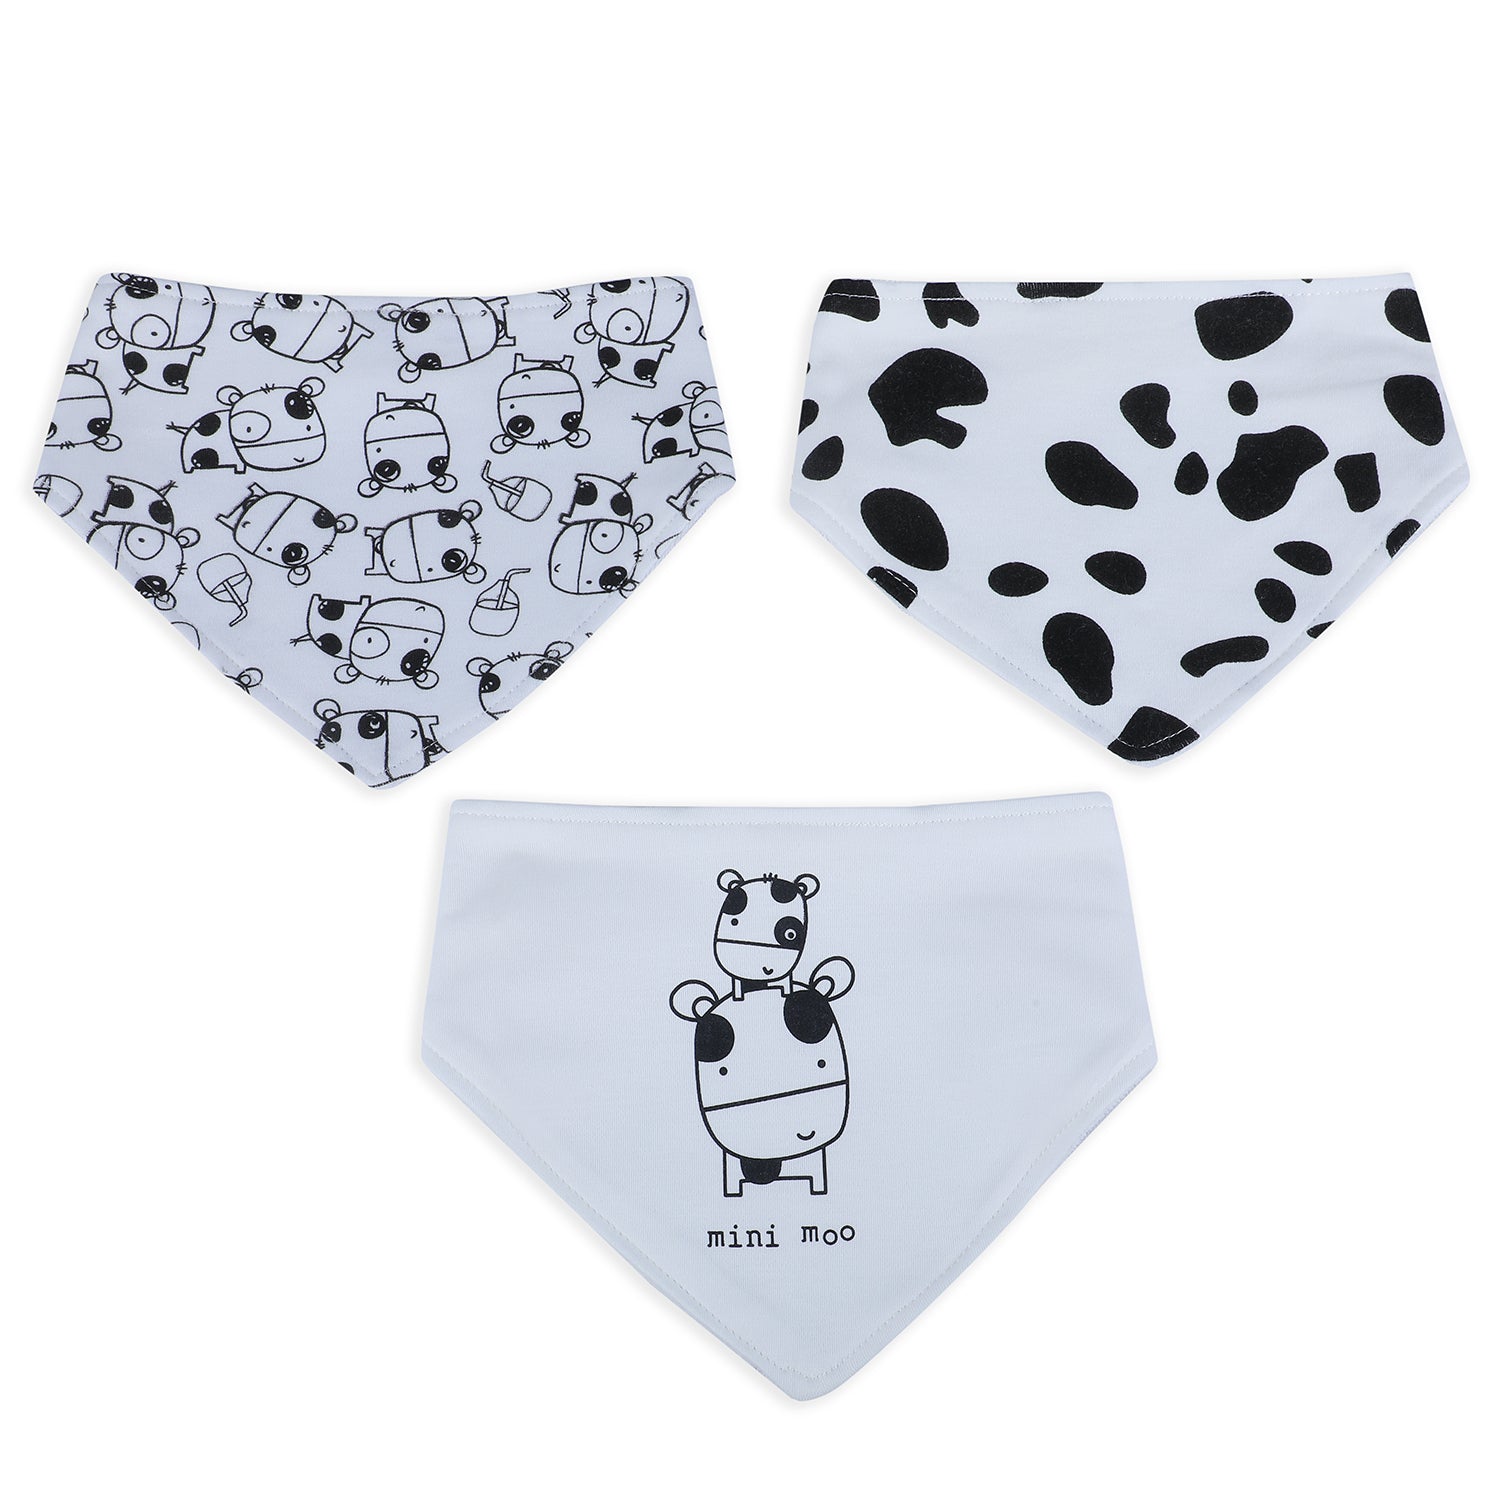 Boboking Cute Designs Boys' Cotton Underwear Briefs, 6-Pack